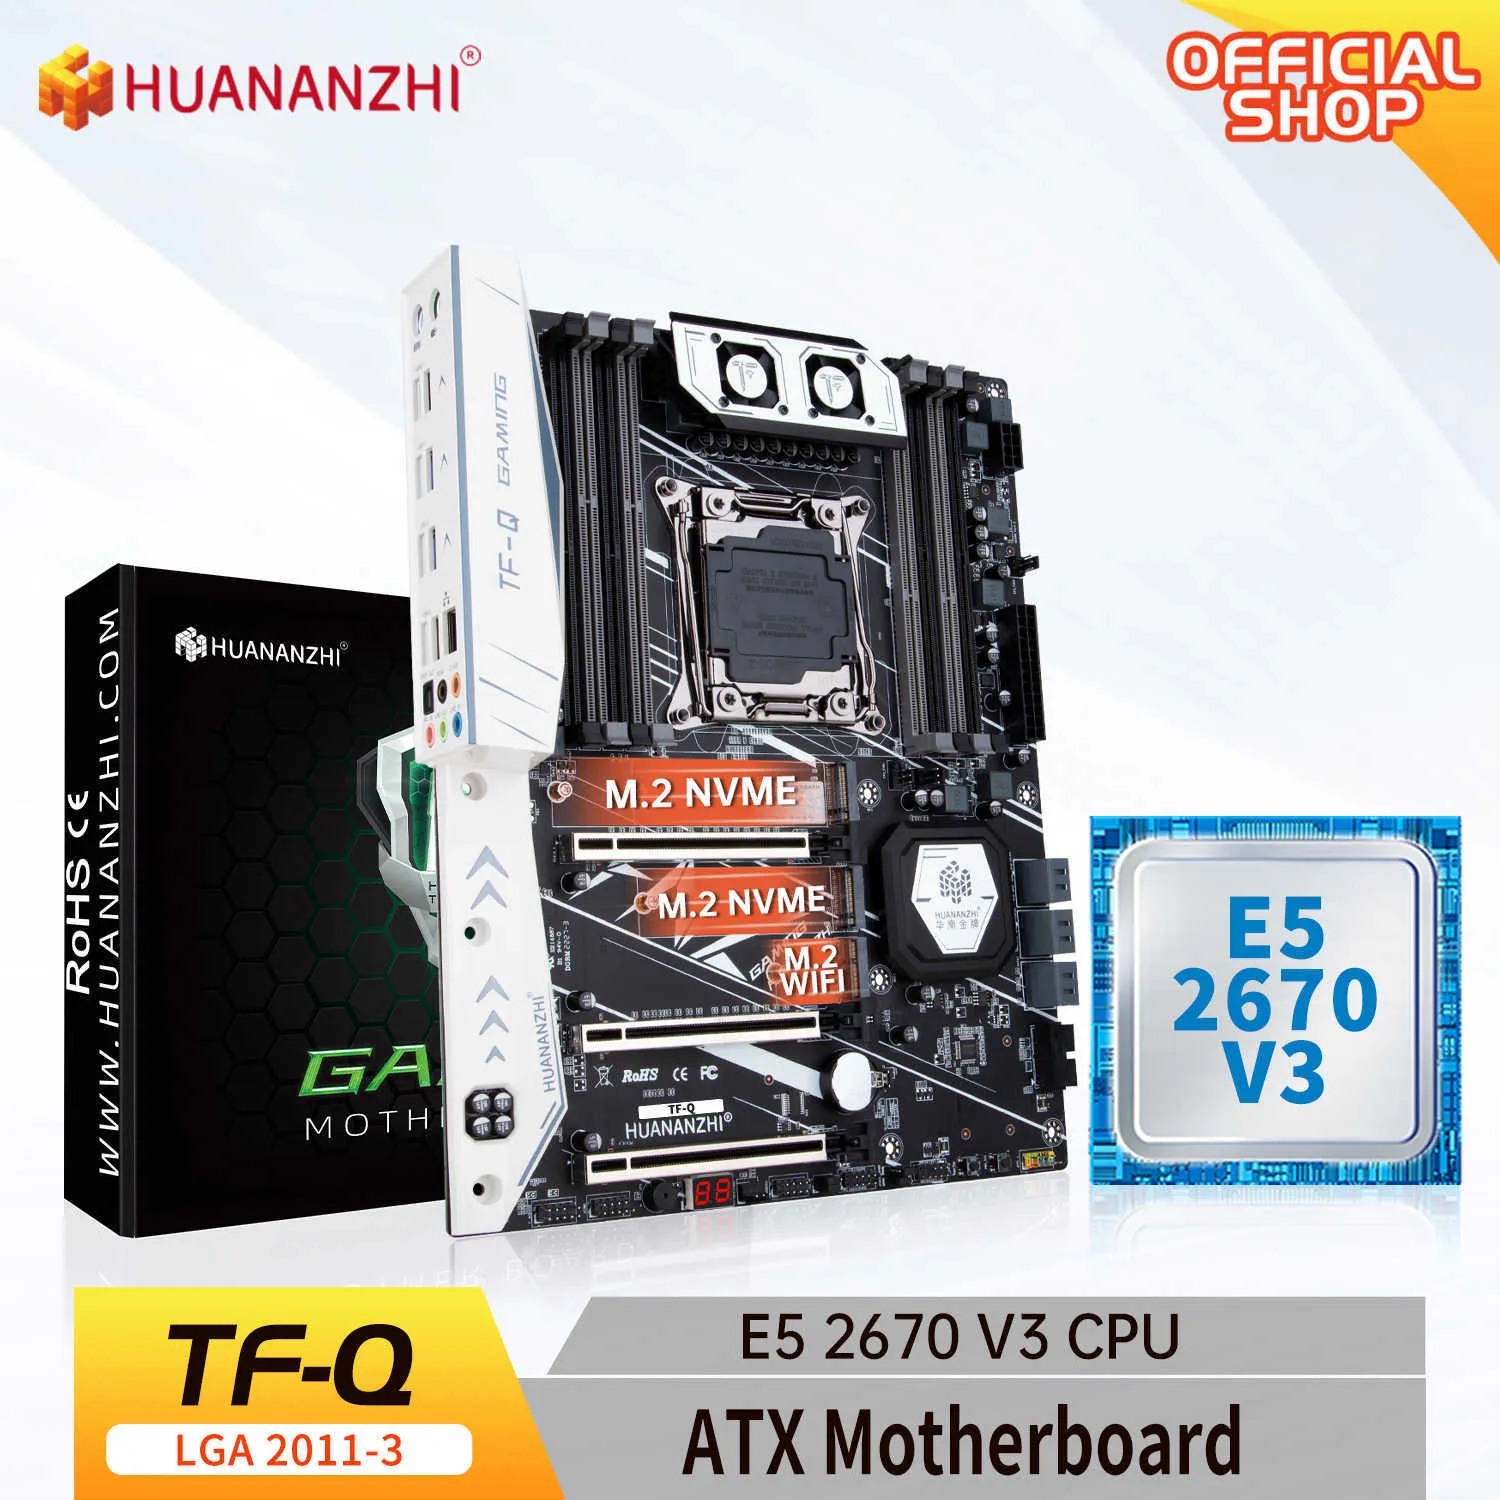 Huananzhi TF Q LGA 2011-3マザーボードIntel with Xeon E5 2670 V3 MOSファンDDR3 DDR4 RECCメモリコンボキットセットNVME SATA USB